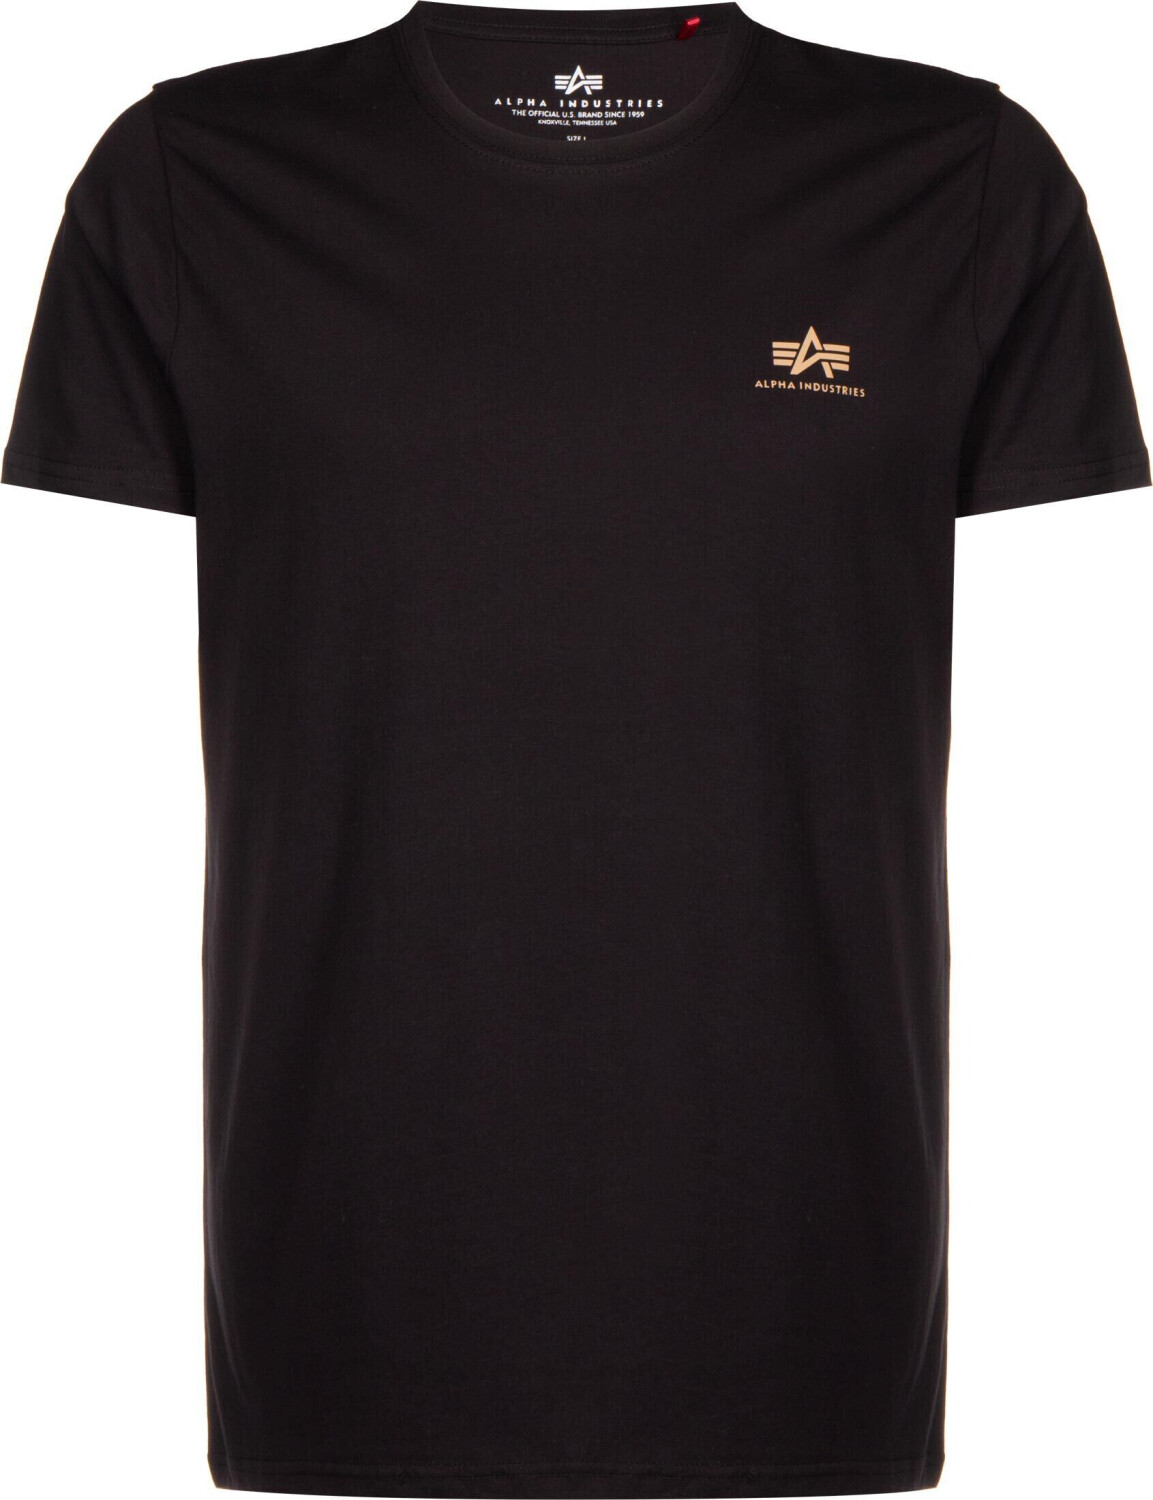 Alpha Industries Camo Backprint T-Shirt schwarz (128507CP 380) ab 20,00 € |  Preisvergleich bei